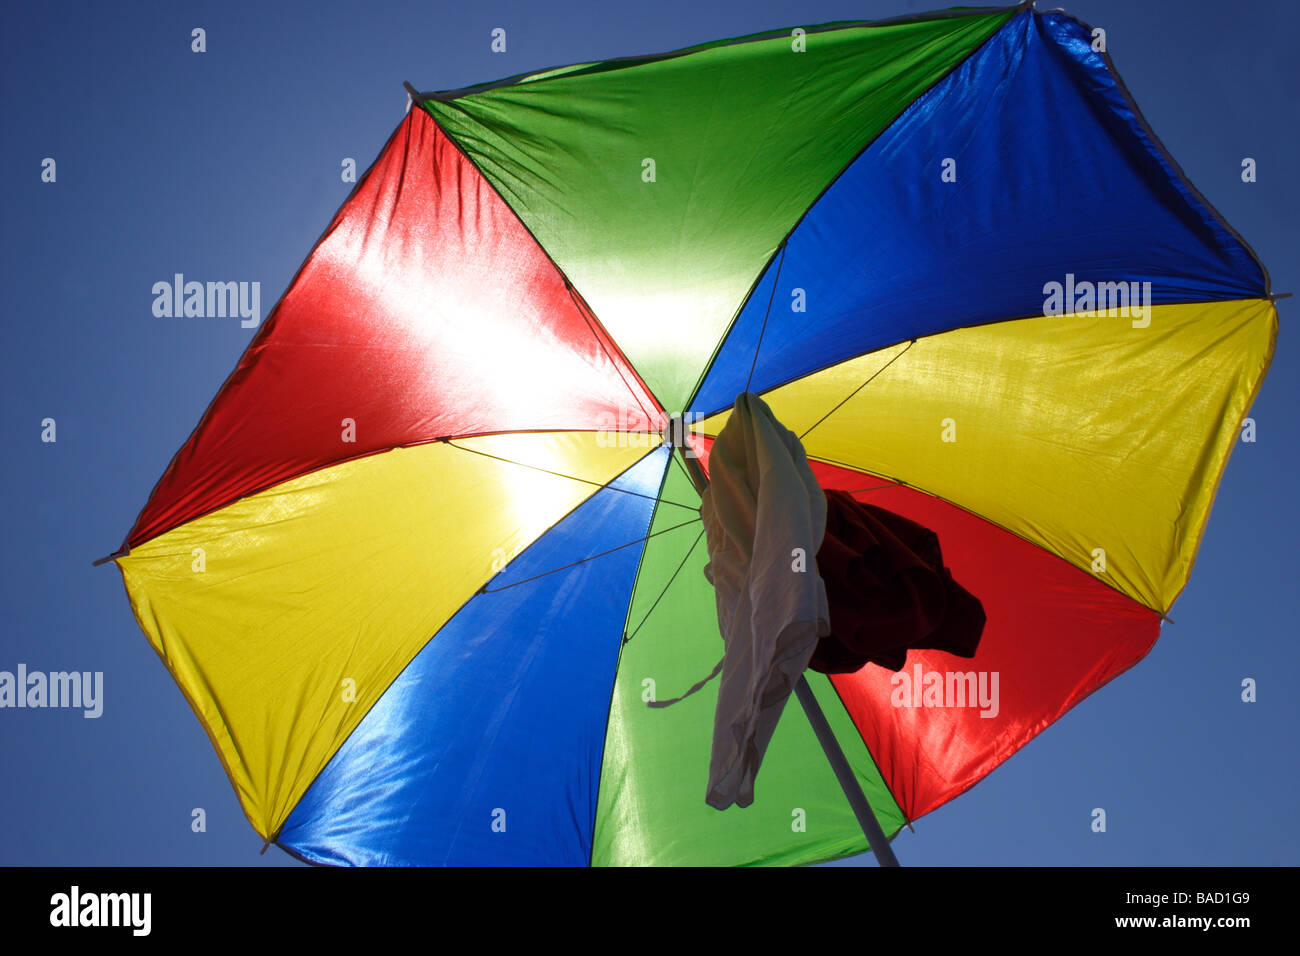 Colorful Umbrella Stock Photo